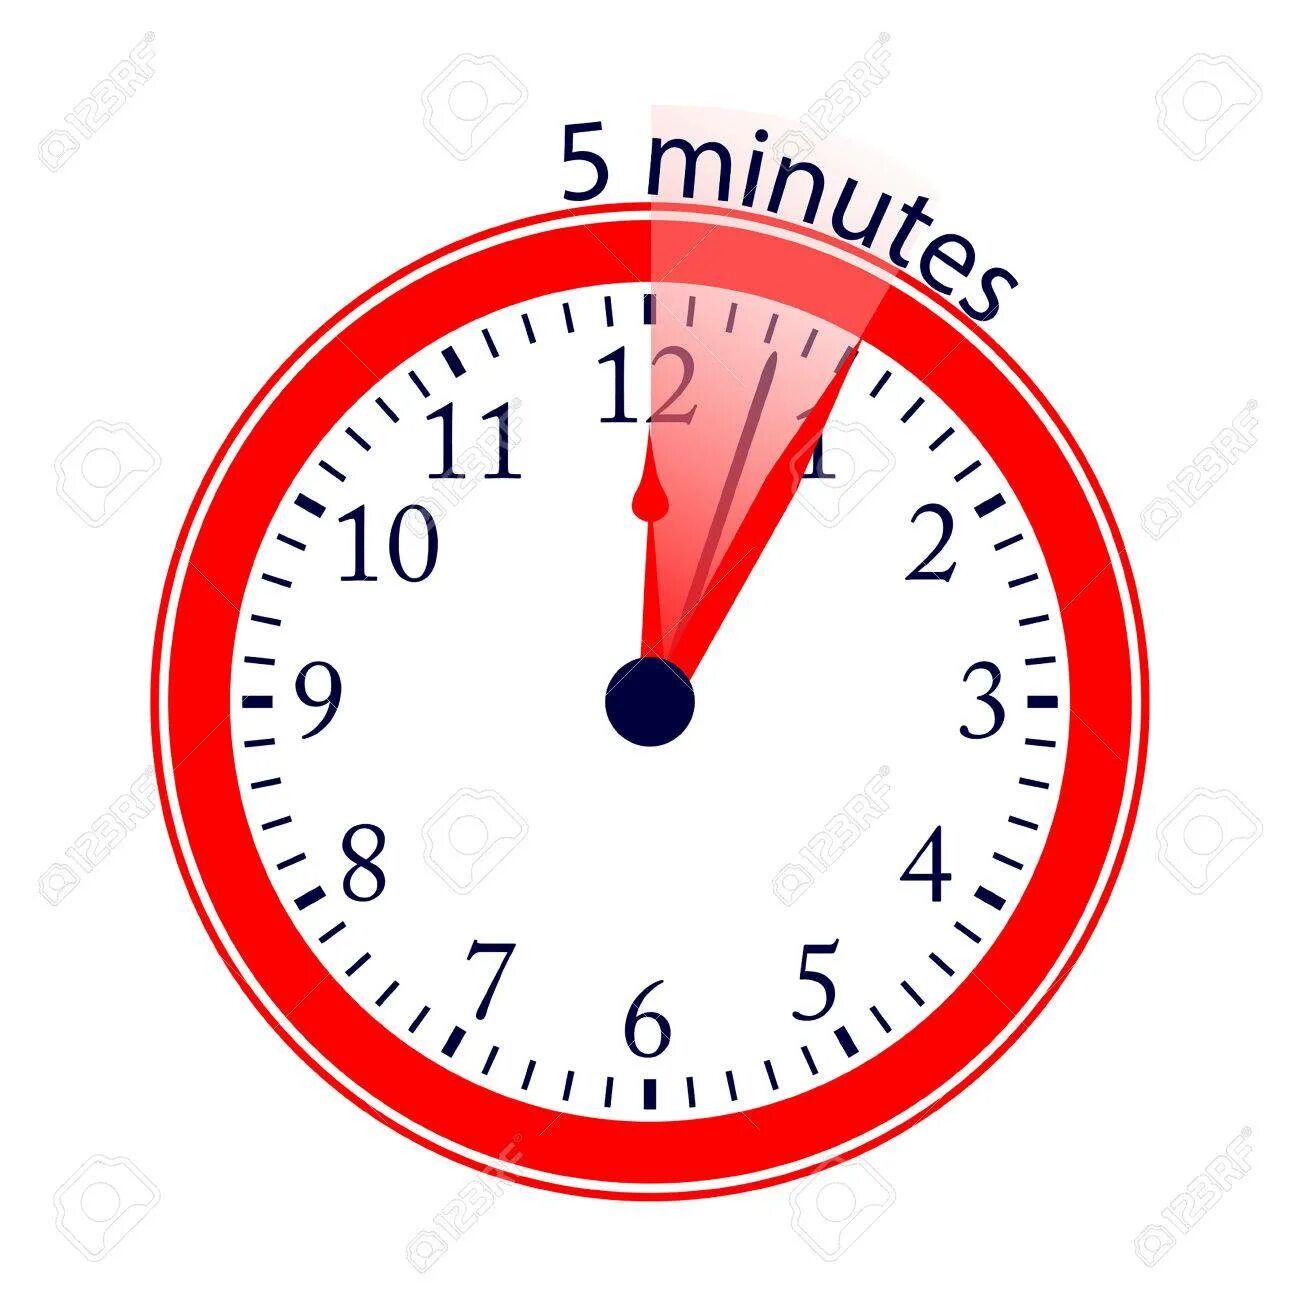 5 минут. Часы 5 минут. Часы 5 минут картинка. Часики 5 минут. Часы пять минут.